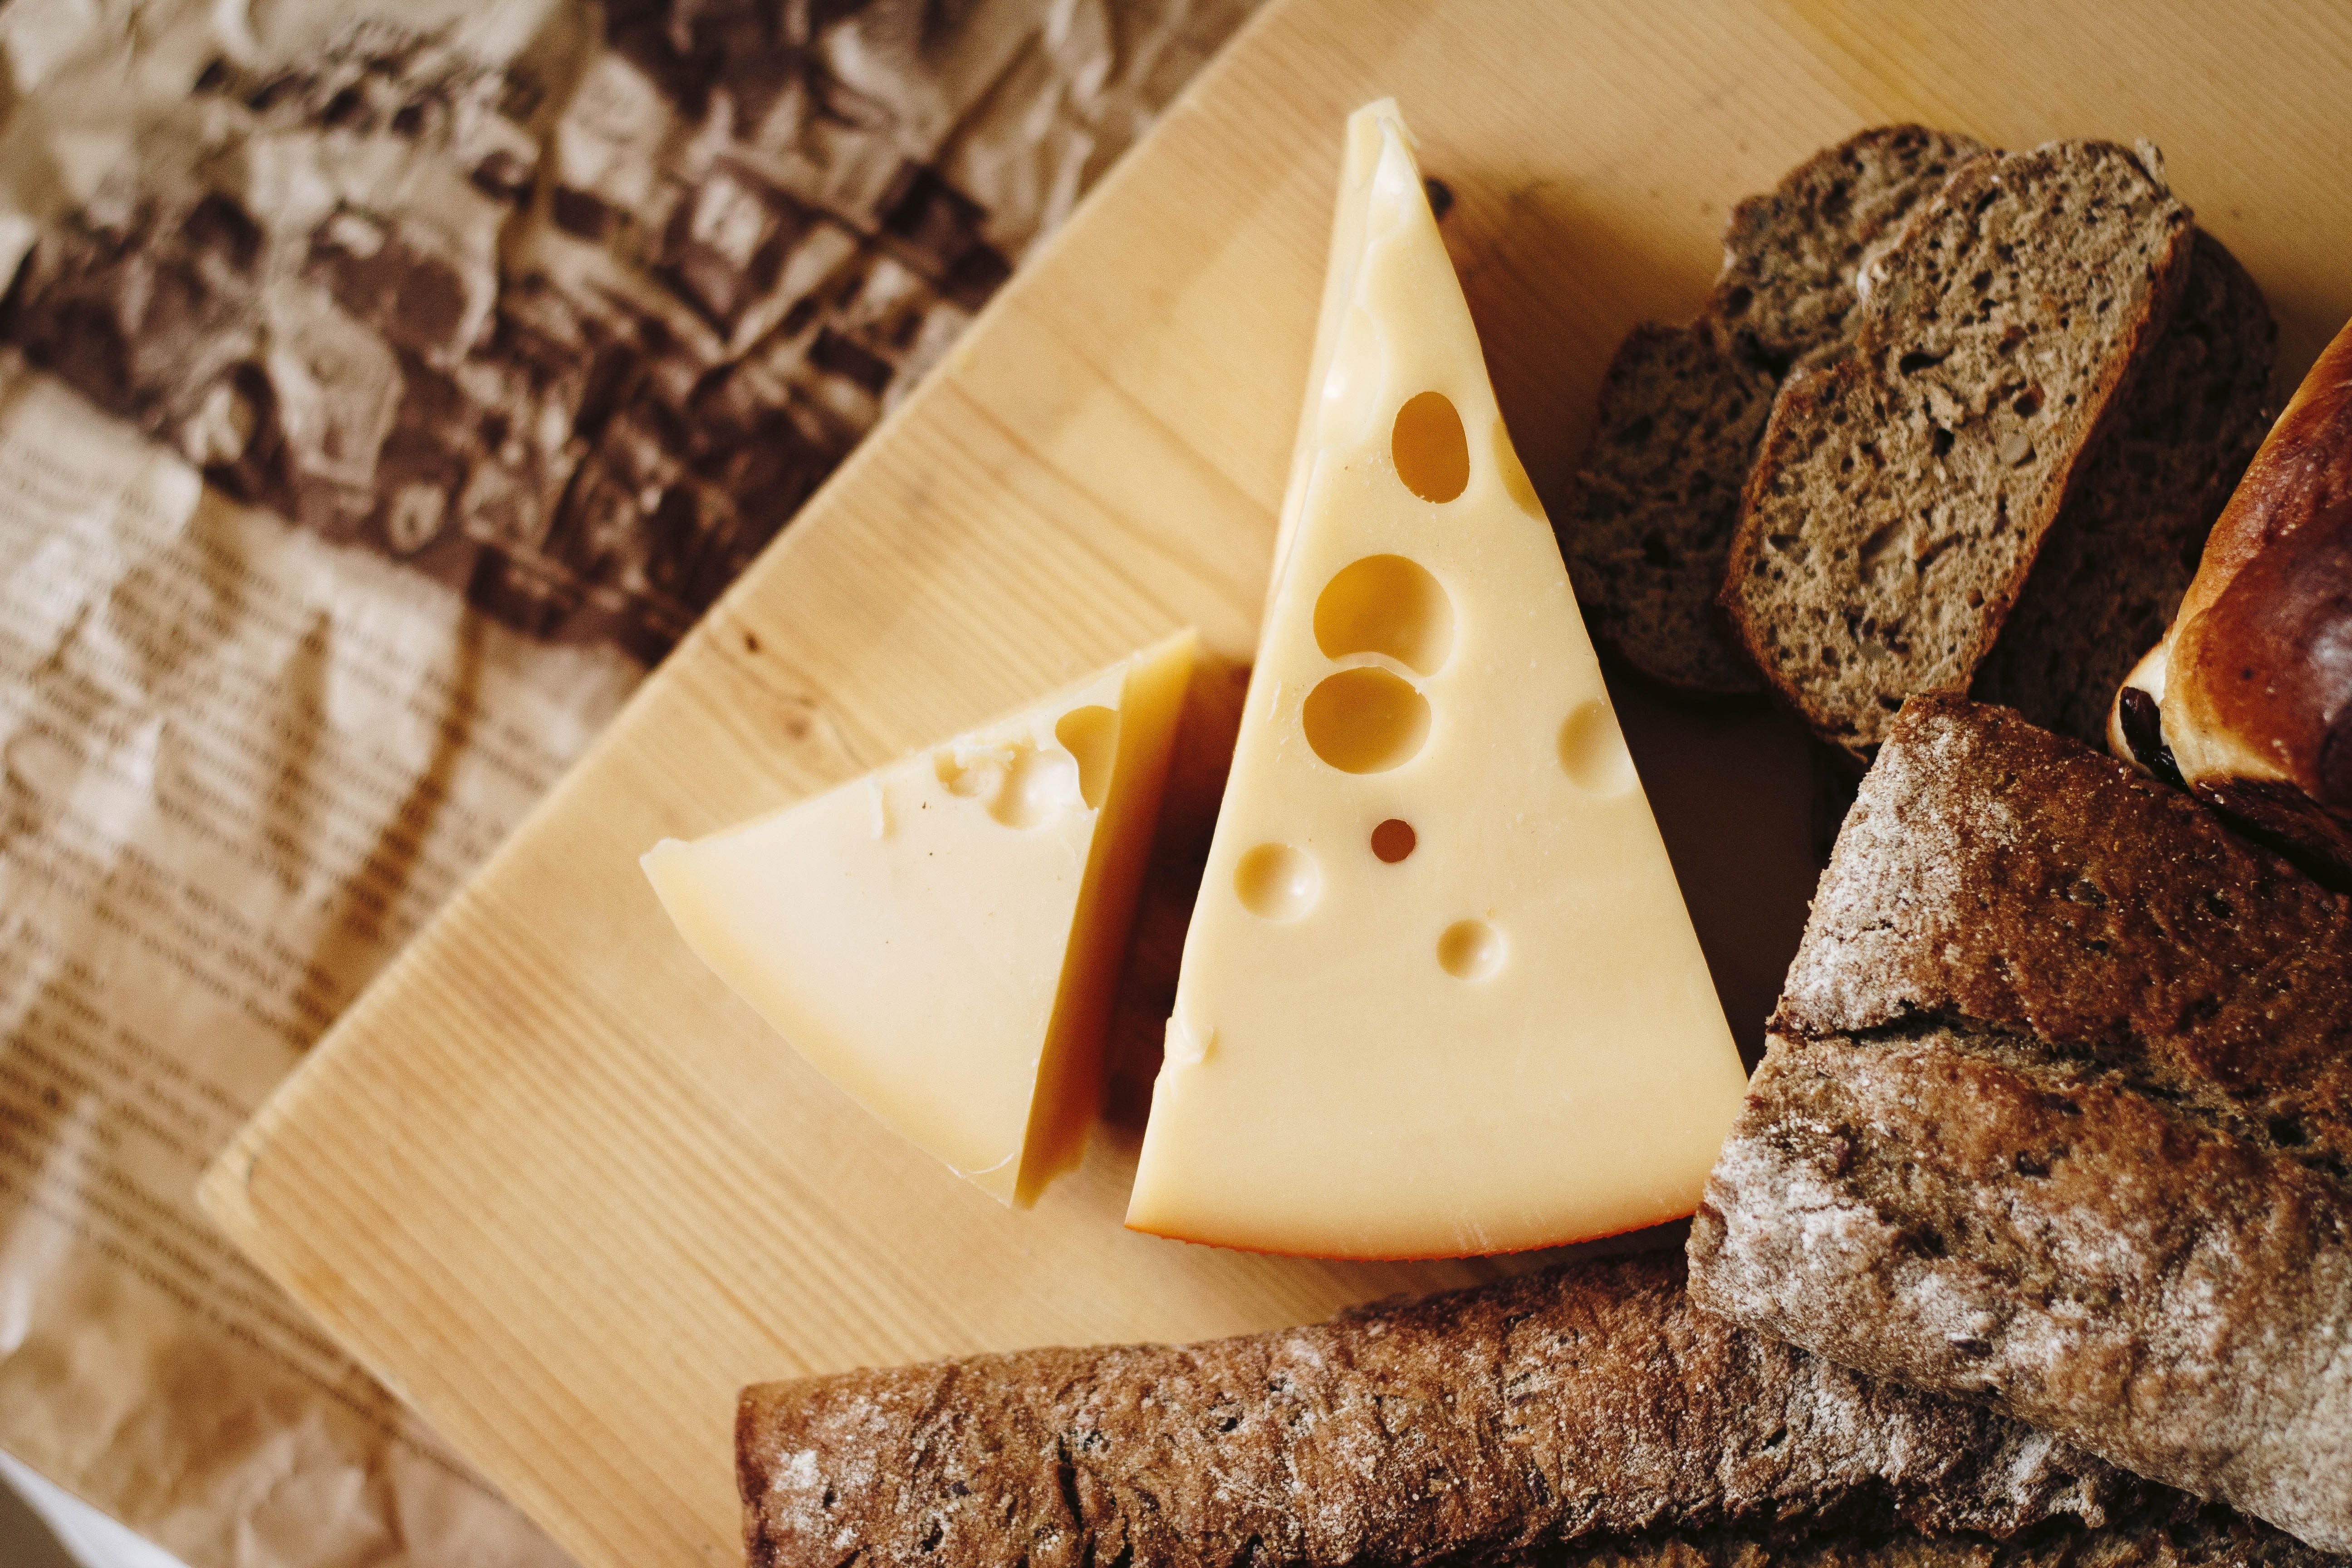 Сир може принести чимало користі організму